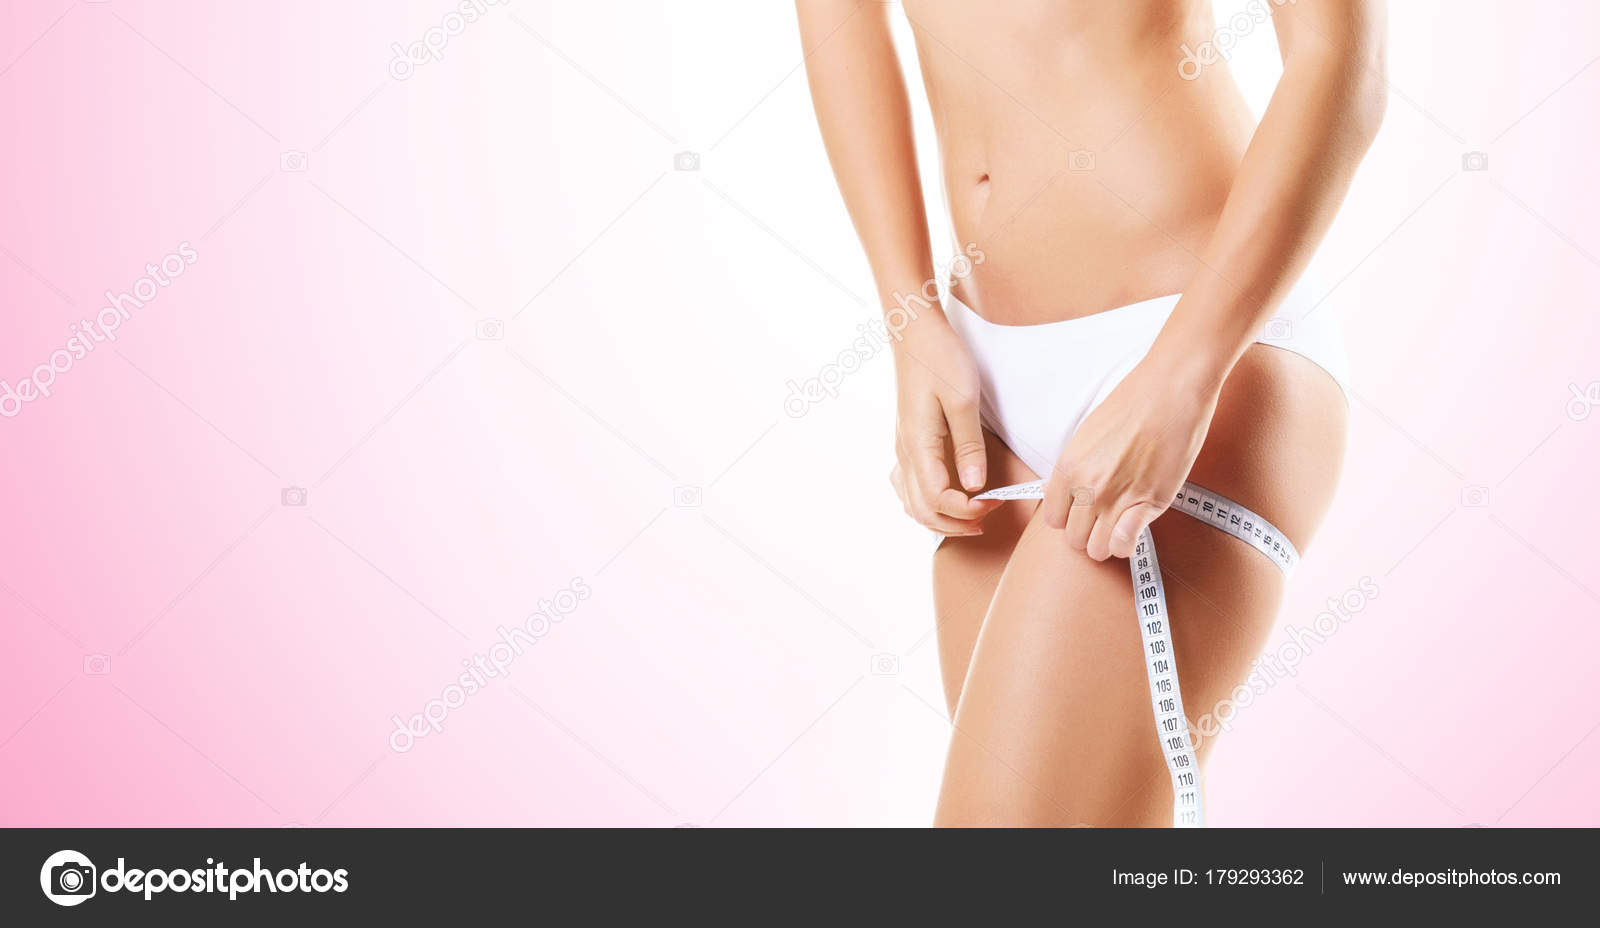 Обрезанное Фото Спортивной Женщины Белом Нижнем Белье Измеряющее Тело Розовом стоковое фото ©shmeljov 179293362